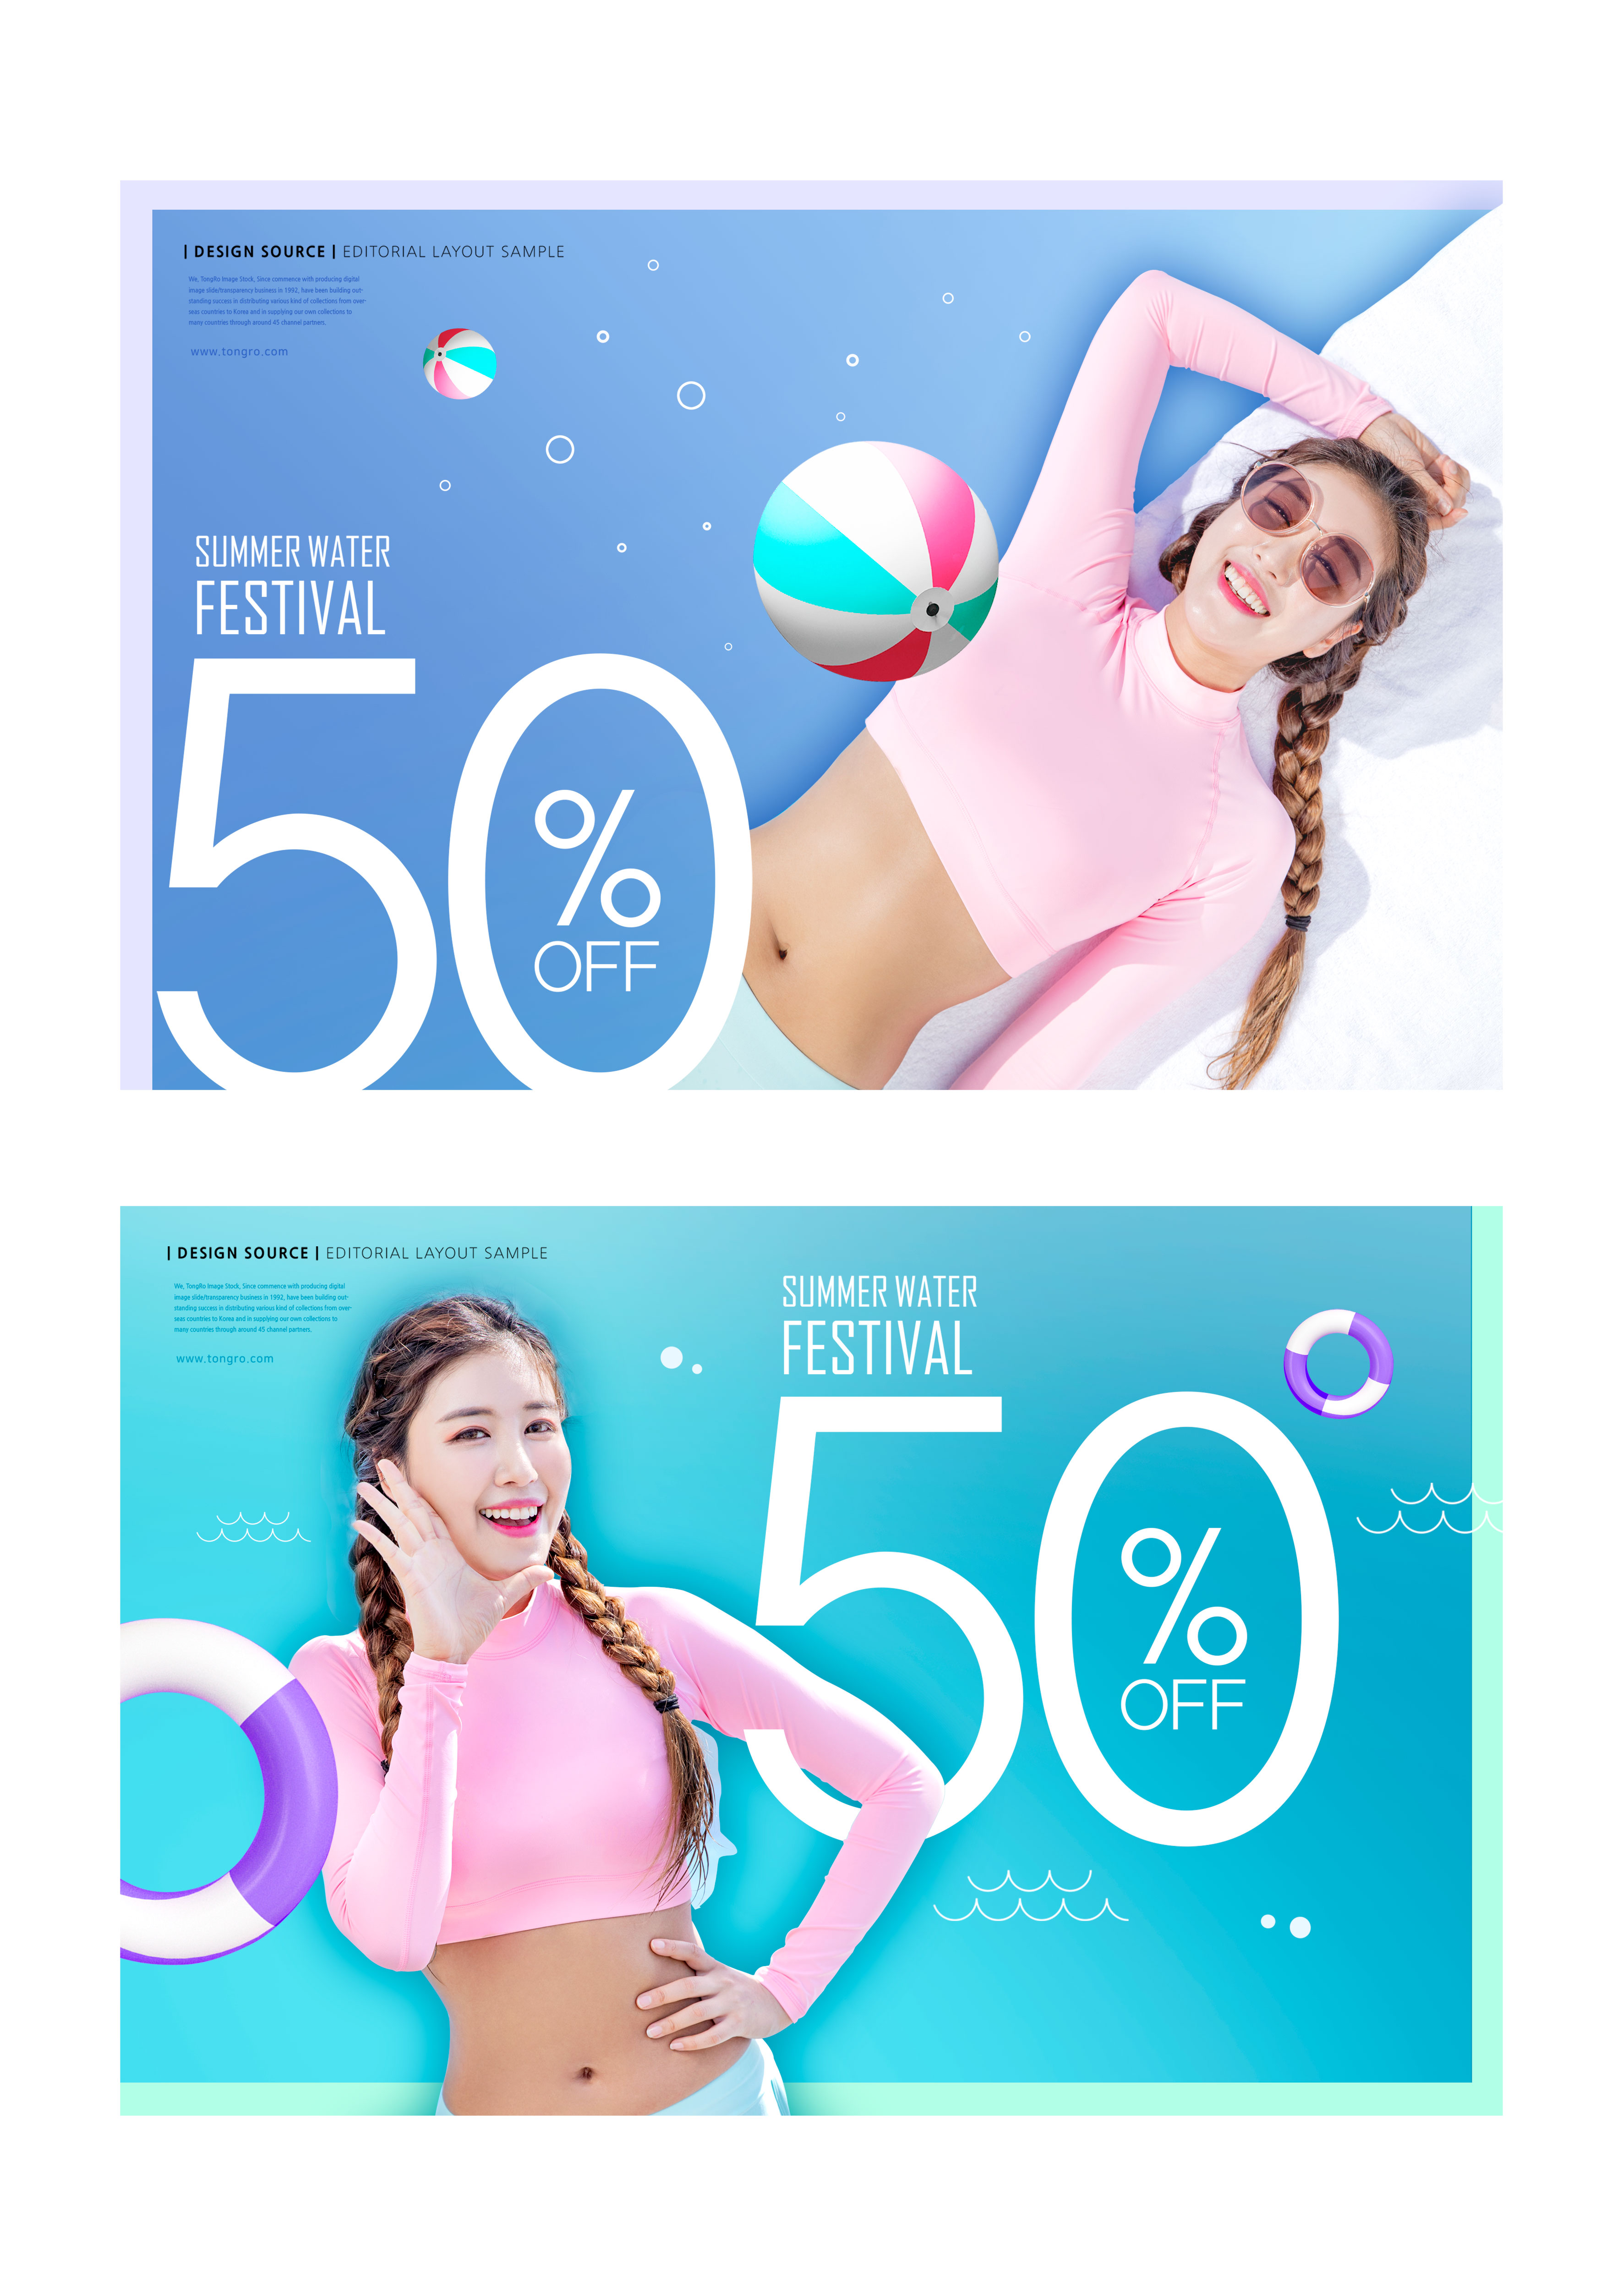 养眼美女夏季活动促销广告海报模板[PSD]插图